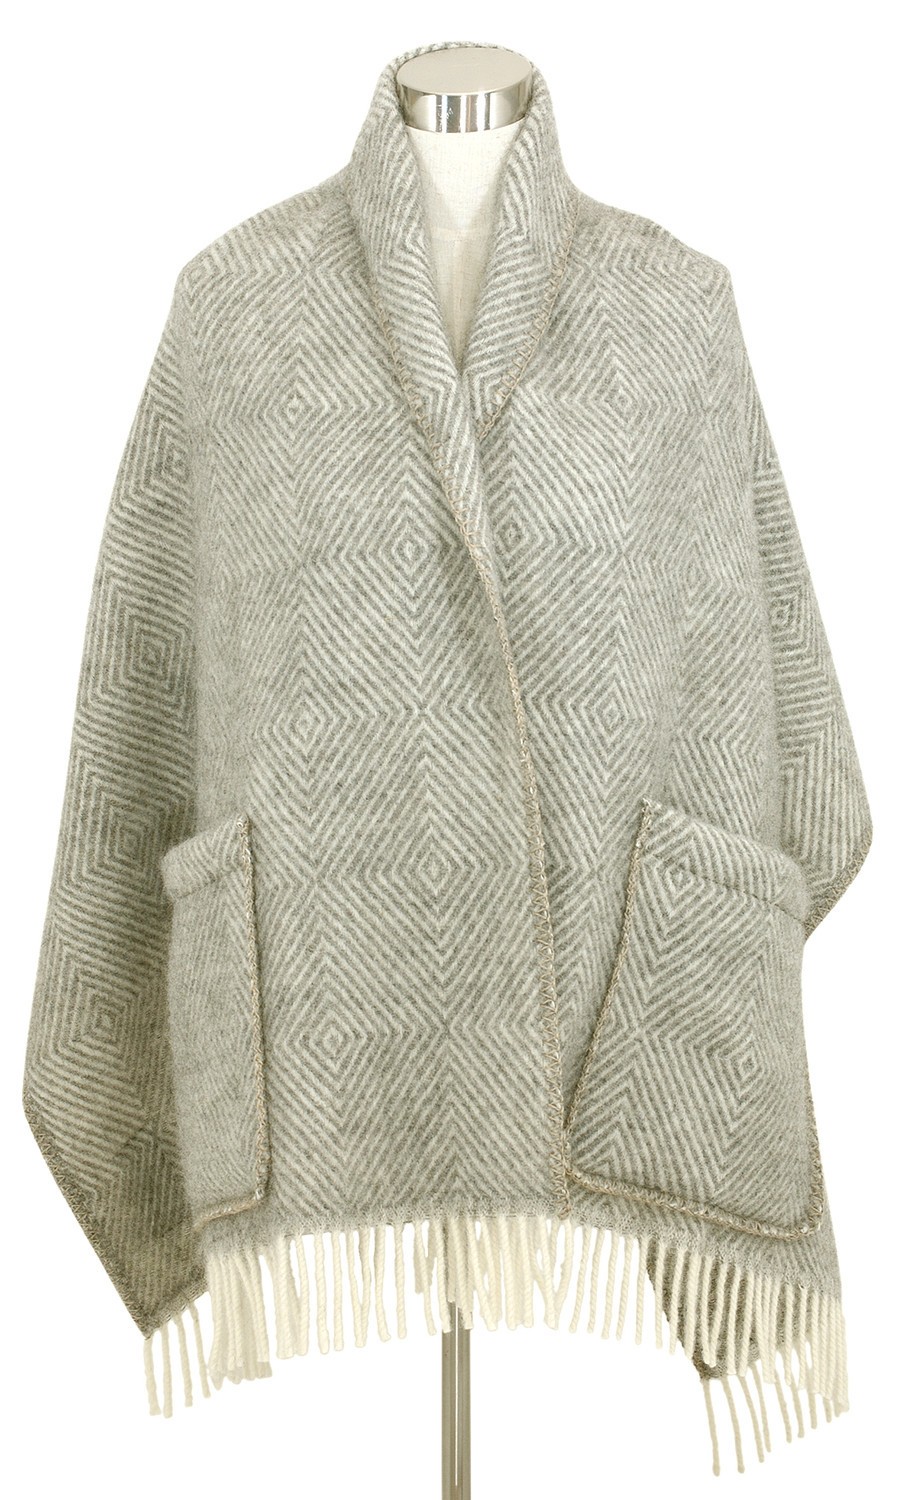 芬蘭Lapuan Kankurit MARIA 羊毛口袋披肩 (淺灰條紋)